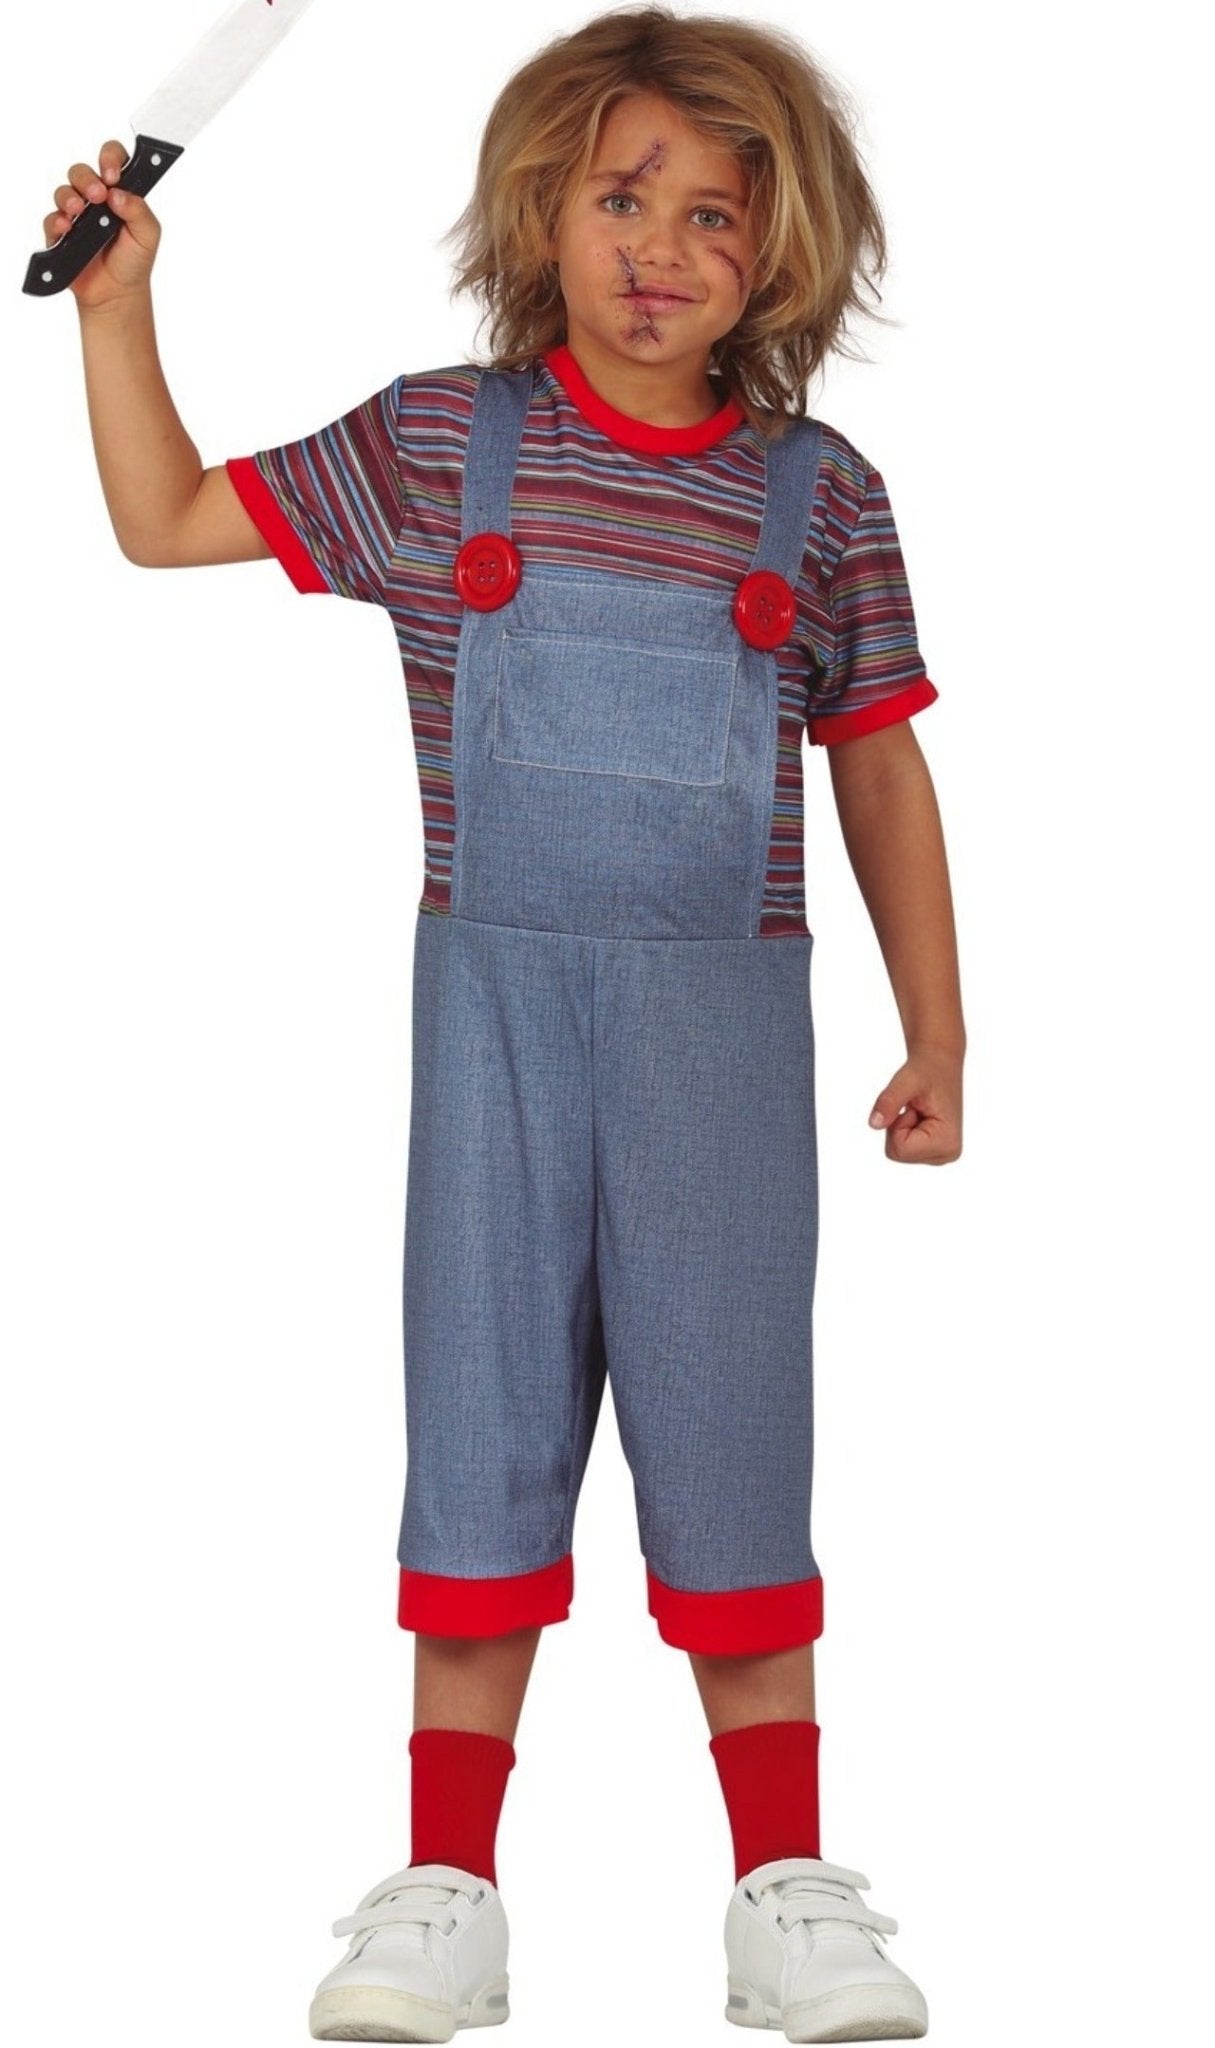 Acquista online il costume Chucky Assassino per bambino